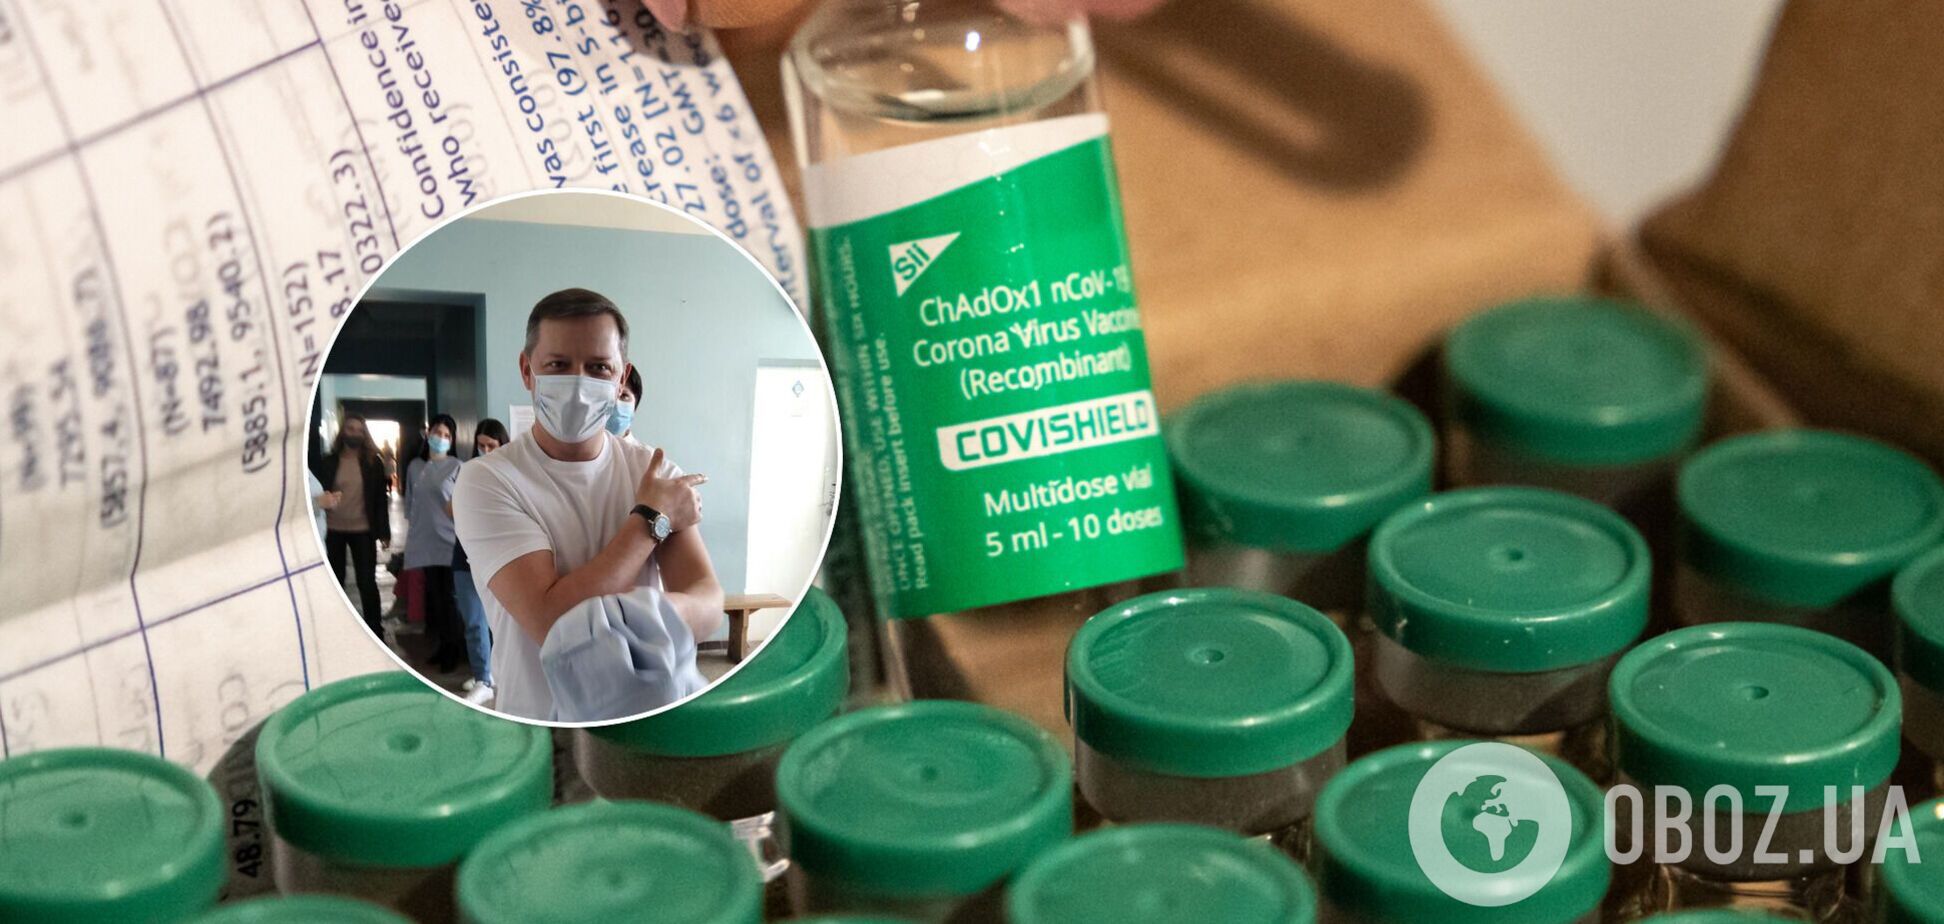 Олег Ляшко зробив щеплення препаратом CoviShield, який раніше називав 'непотребом'. Відео